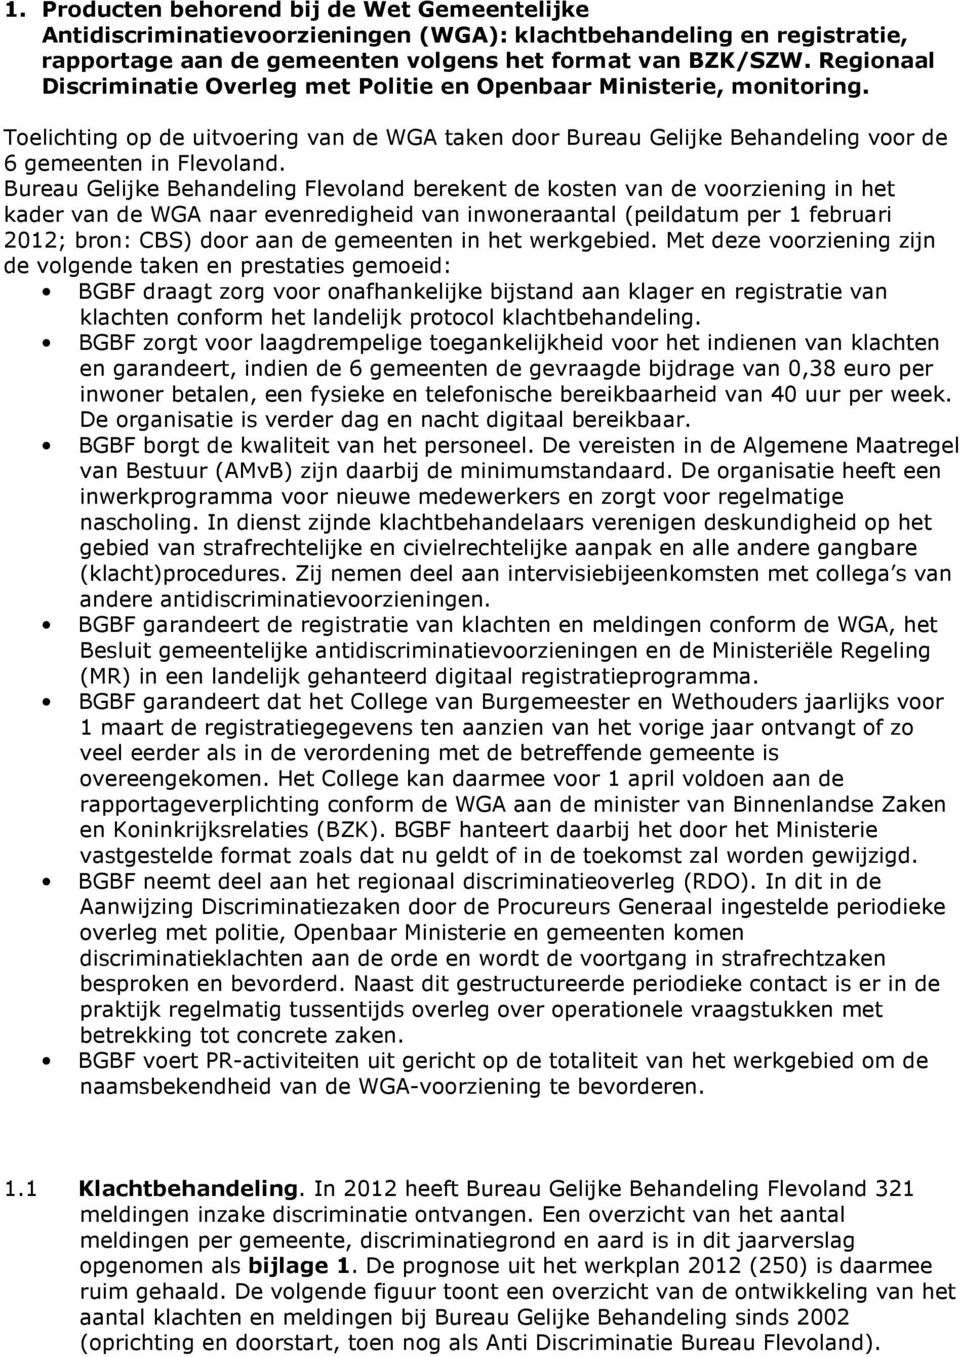 Bureau Gelijke Behandeling Flevoland berekent de kosten van de voorziening in het kader van de WGA naar evenredigheid van inwoneraantal (peildatum per 1 februari 2012; bron: CBS) door aan de